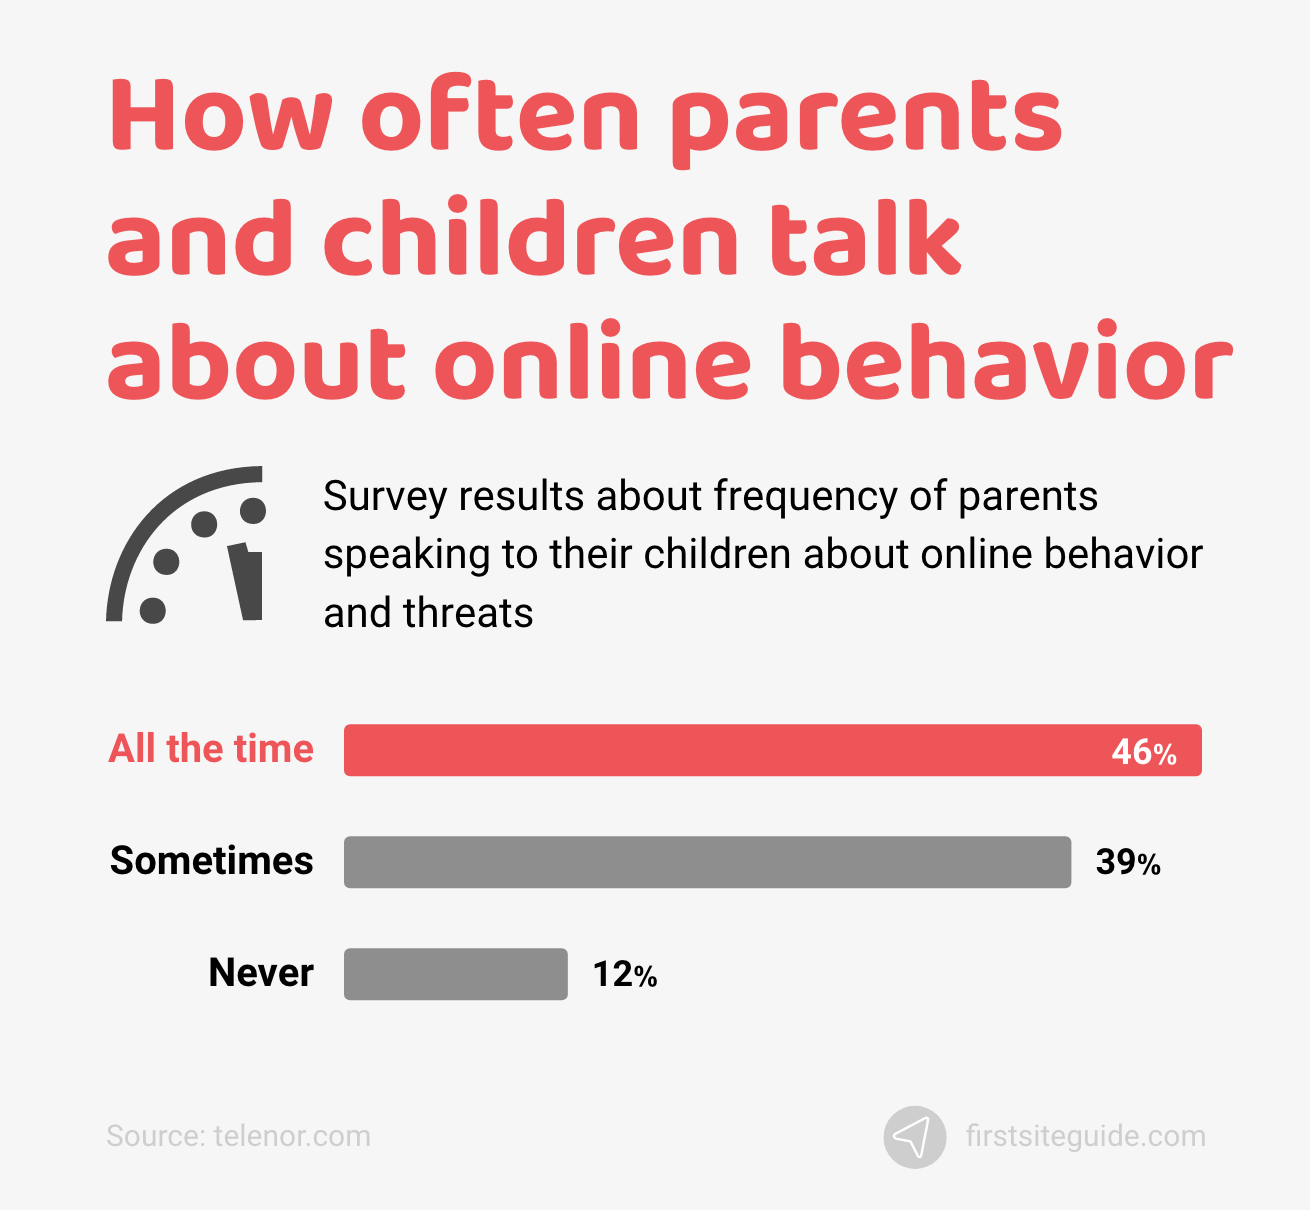 Cât de des vorbesc părinții și copiii despre comportamentul online